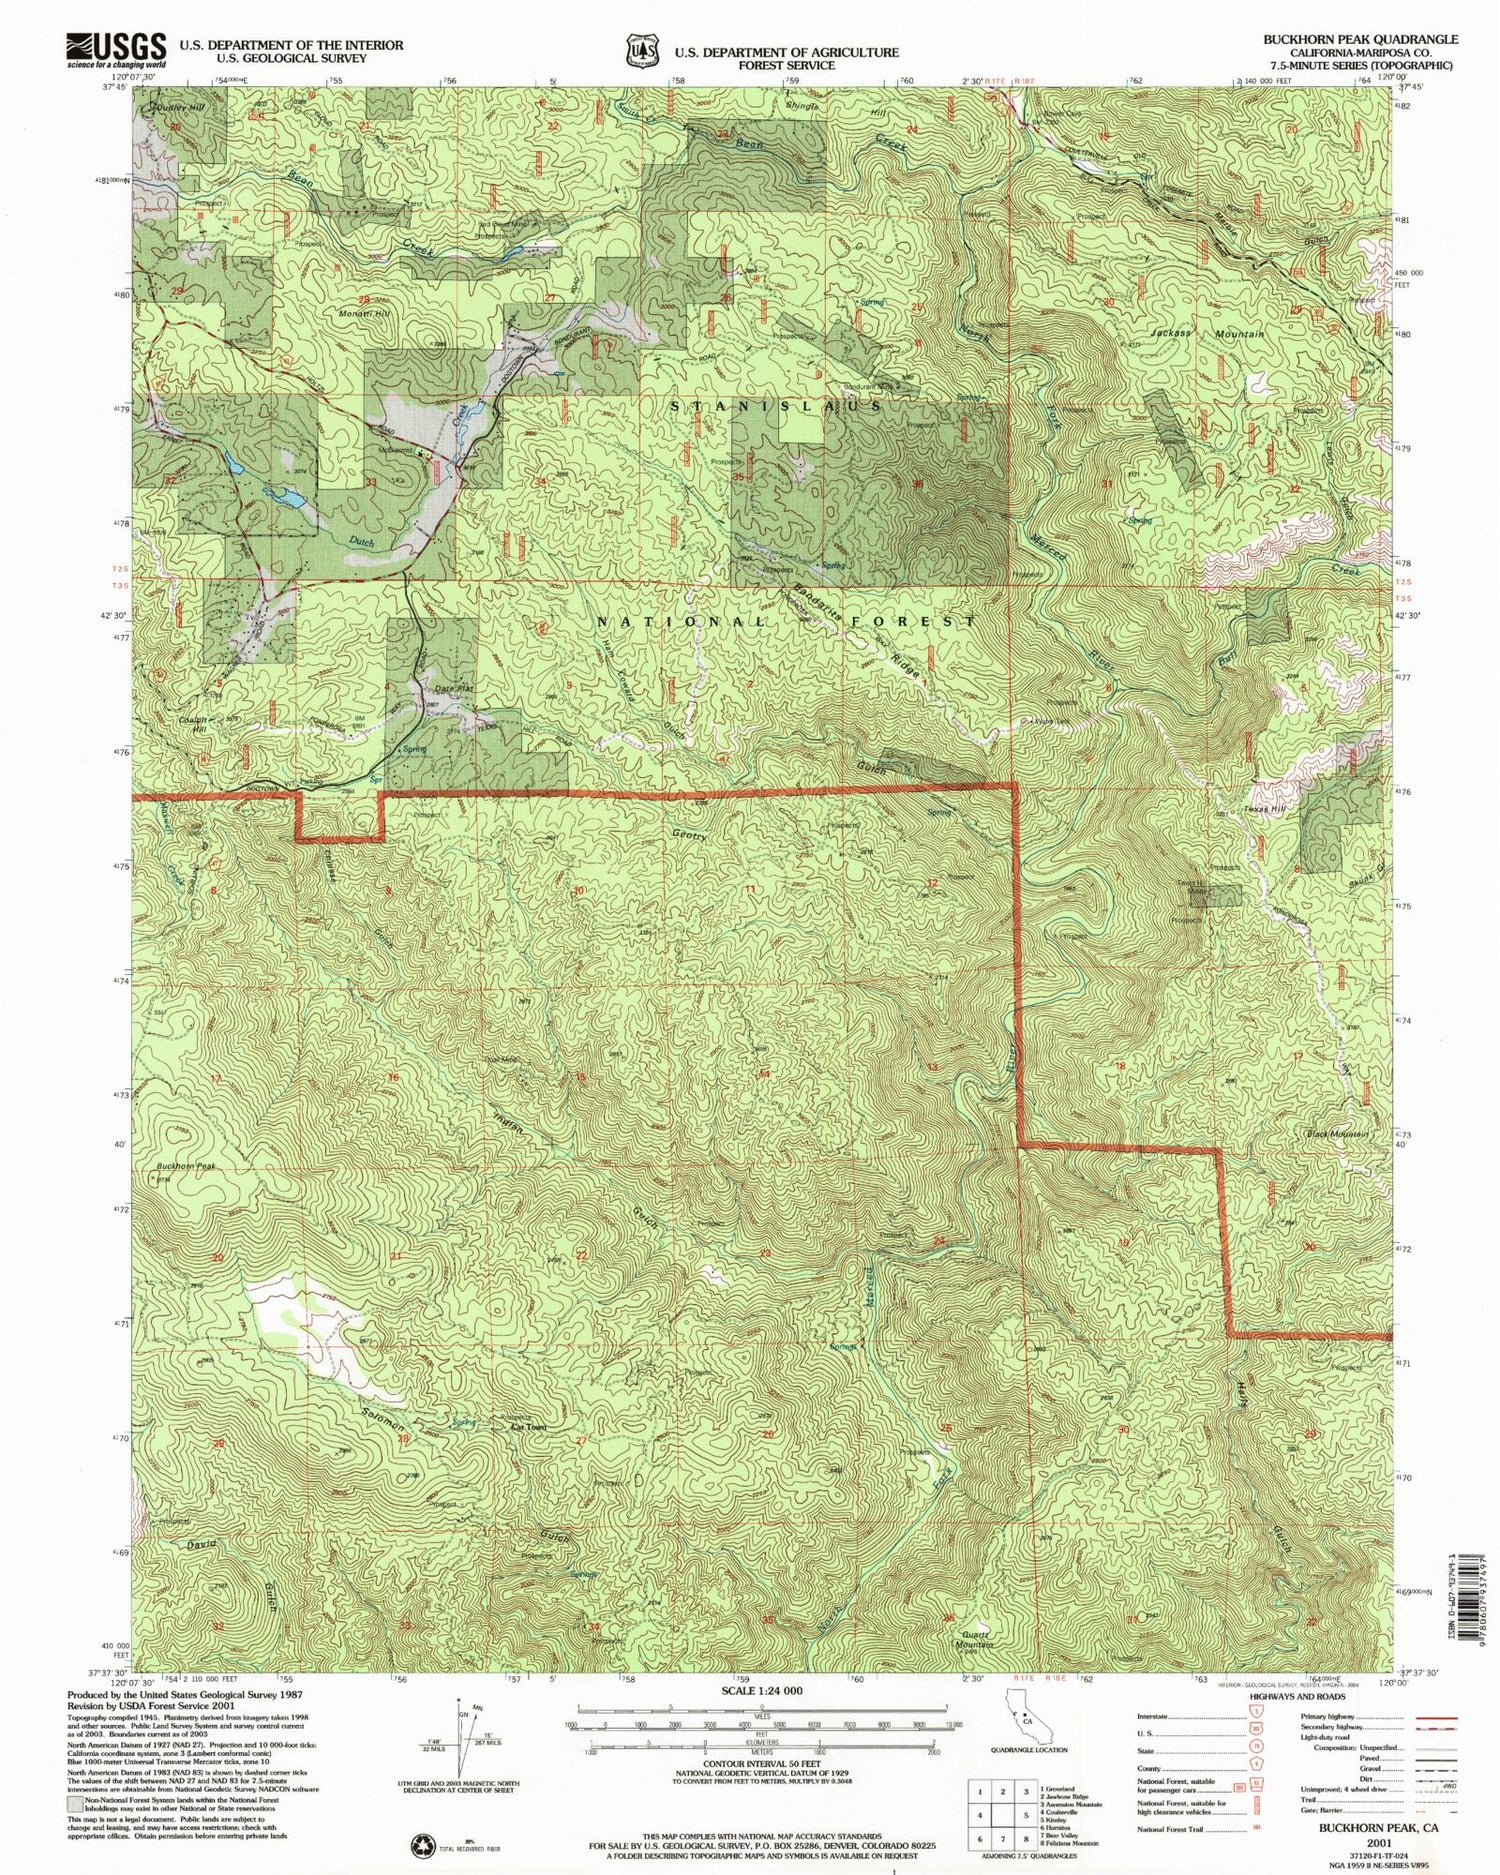 Classic USGS Buckhorn Peak California 7.5'x7.5' Topo Map Image